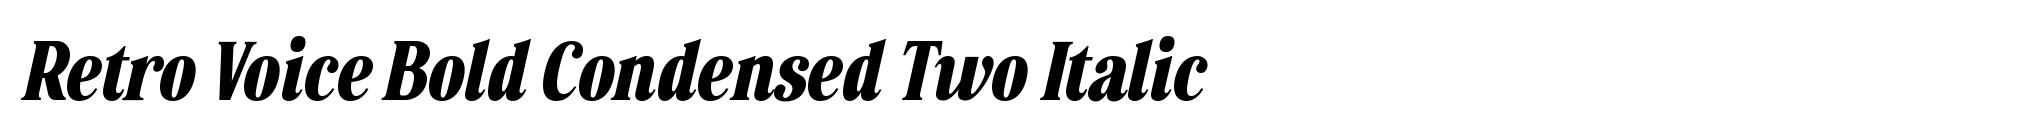 Retro Voice Bold Condensed Two Italic image